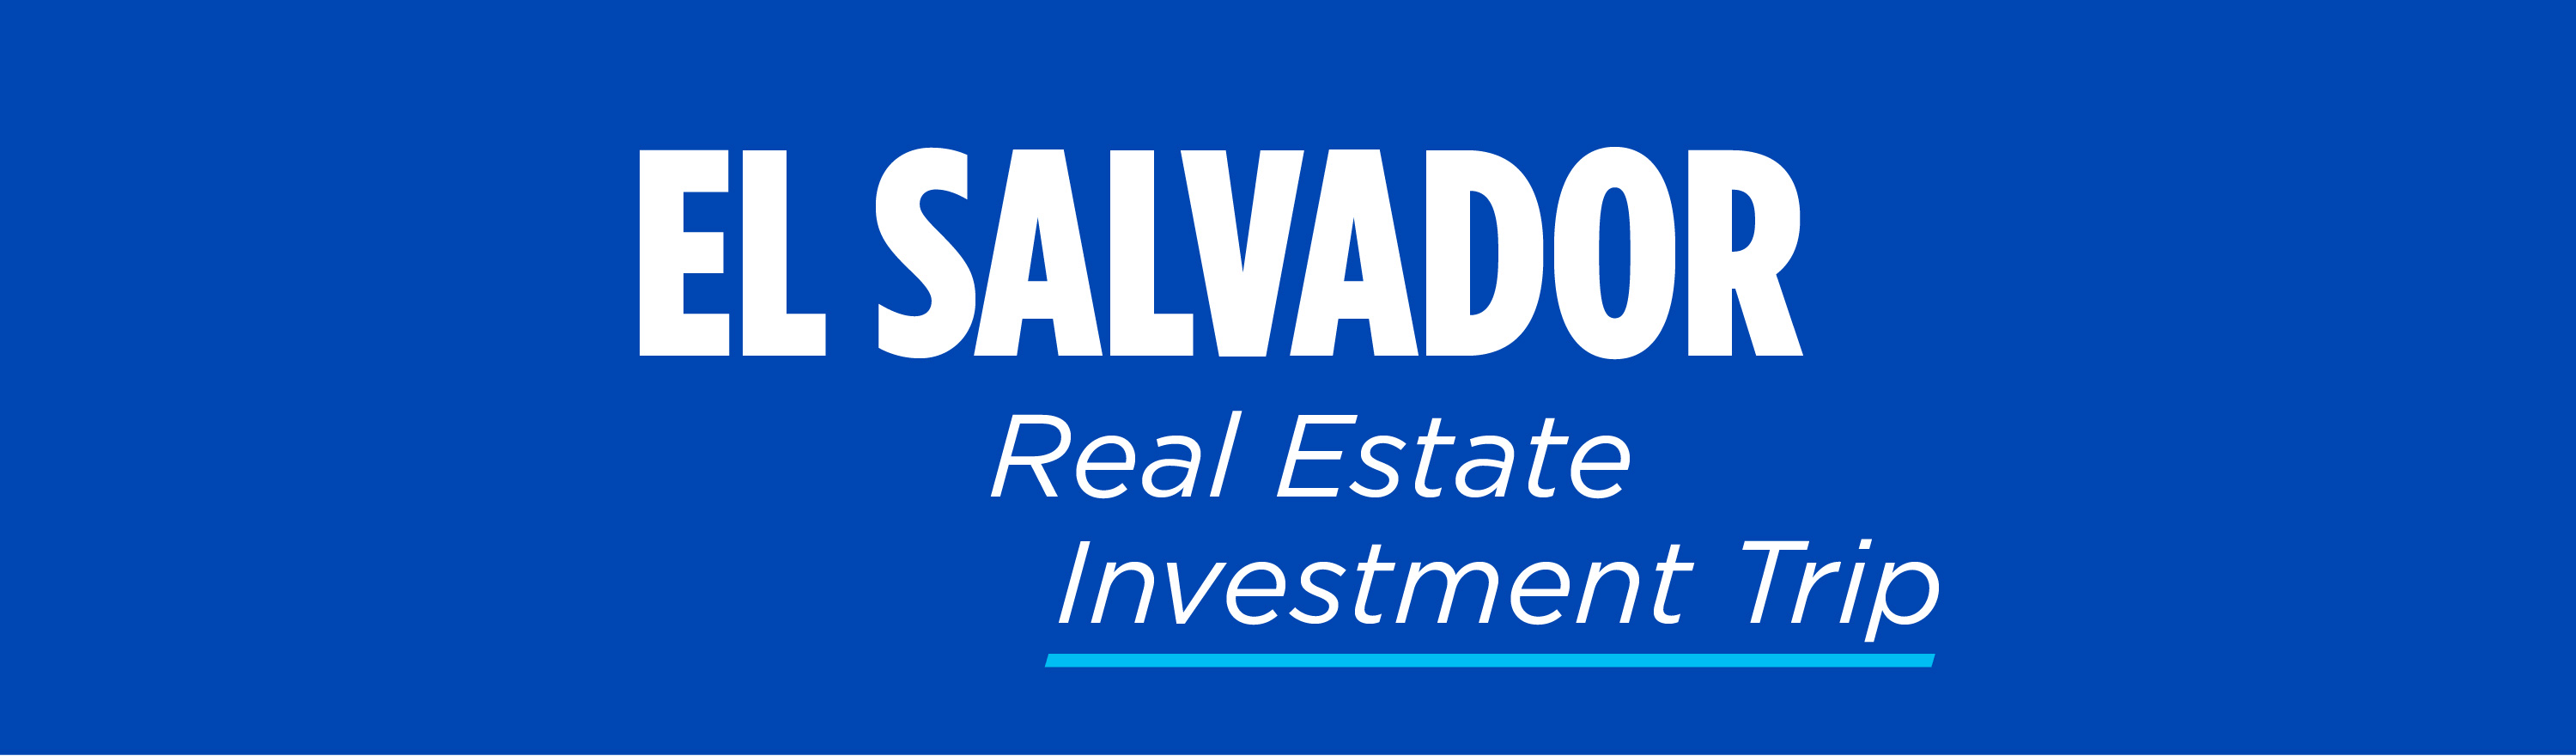 El_Salvador_Real_Estate_Investment_Trip-logo